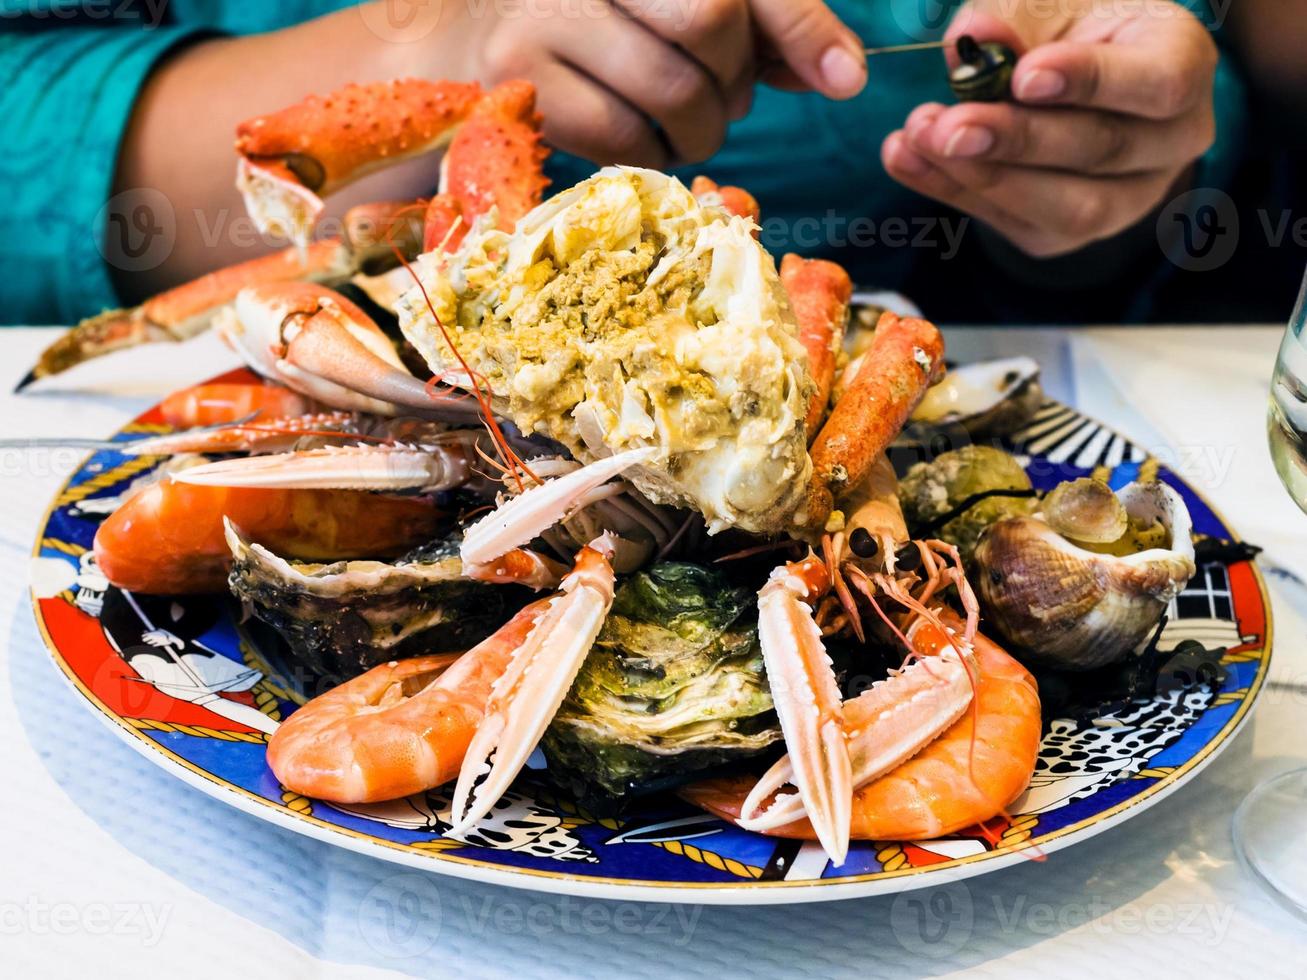 bezoeker eet zeevruchten in lokaal vis restaurant foto